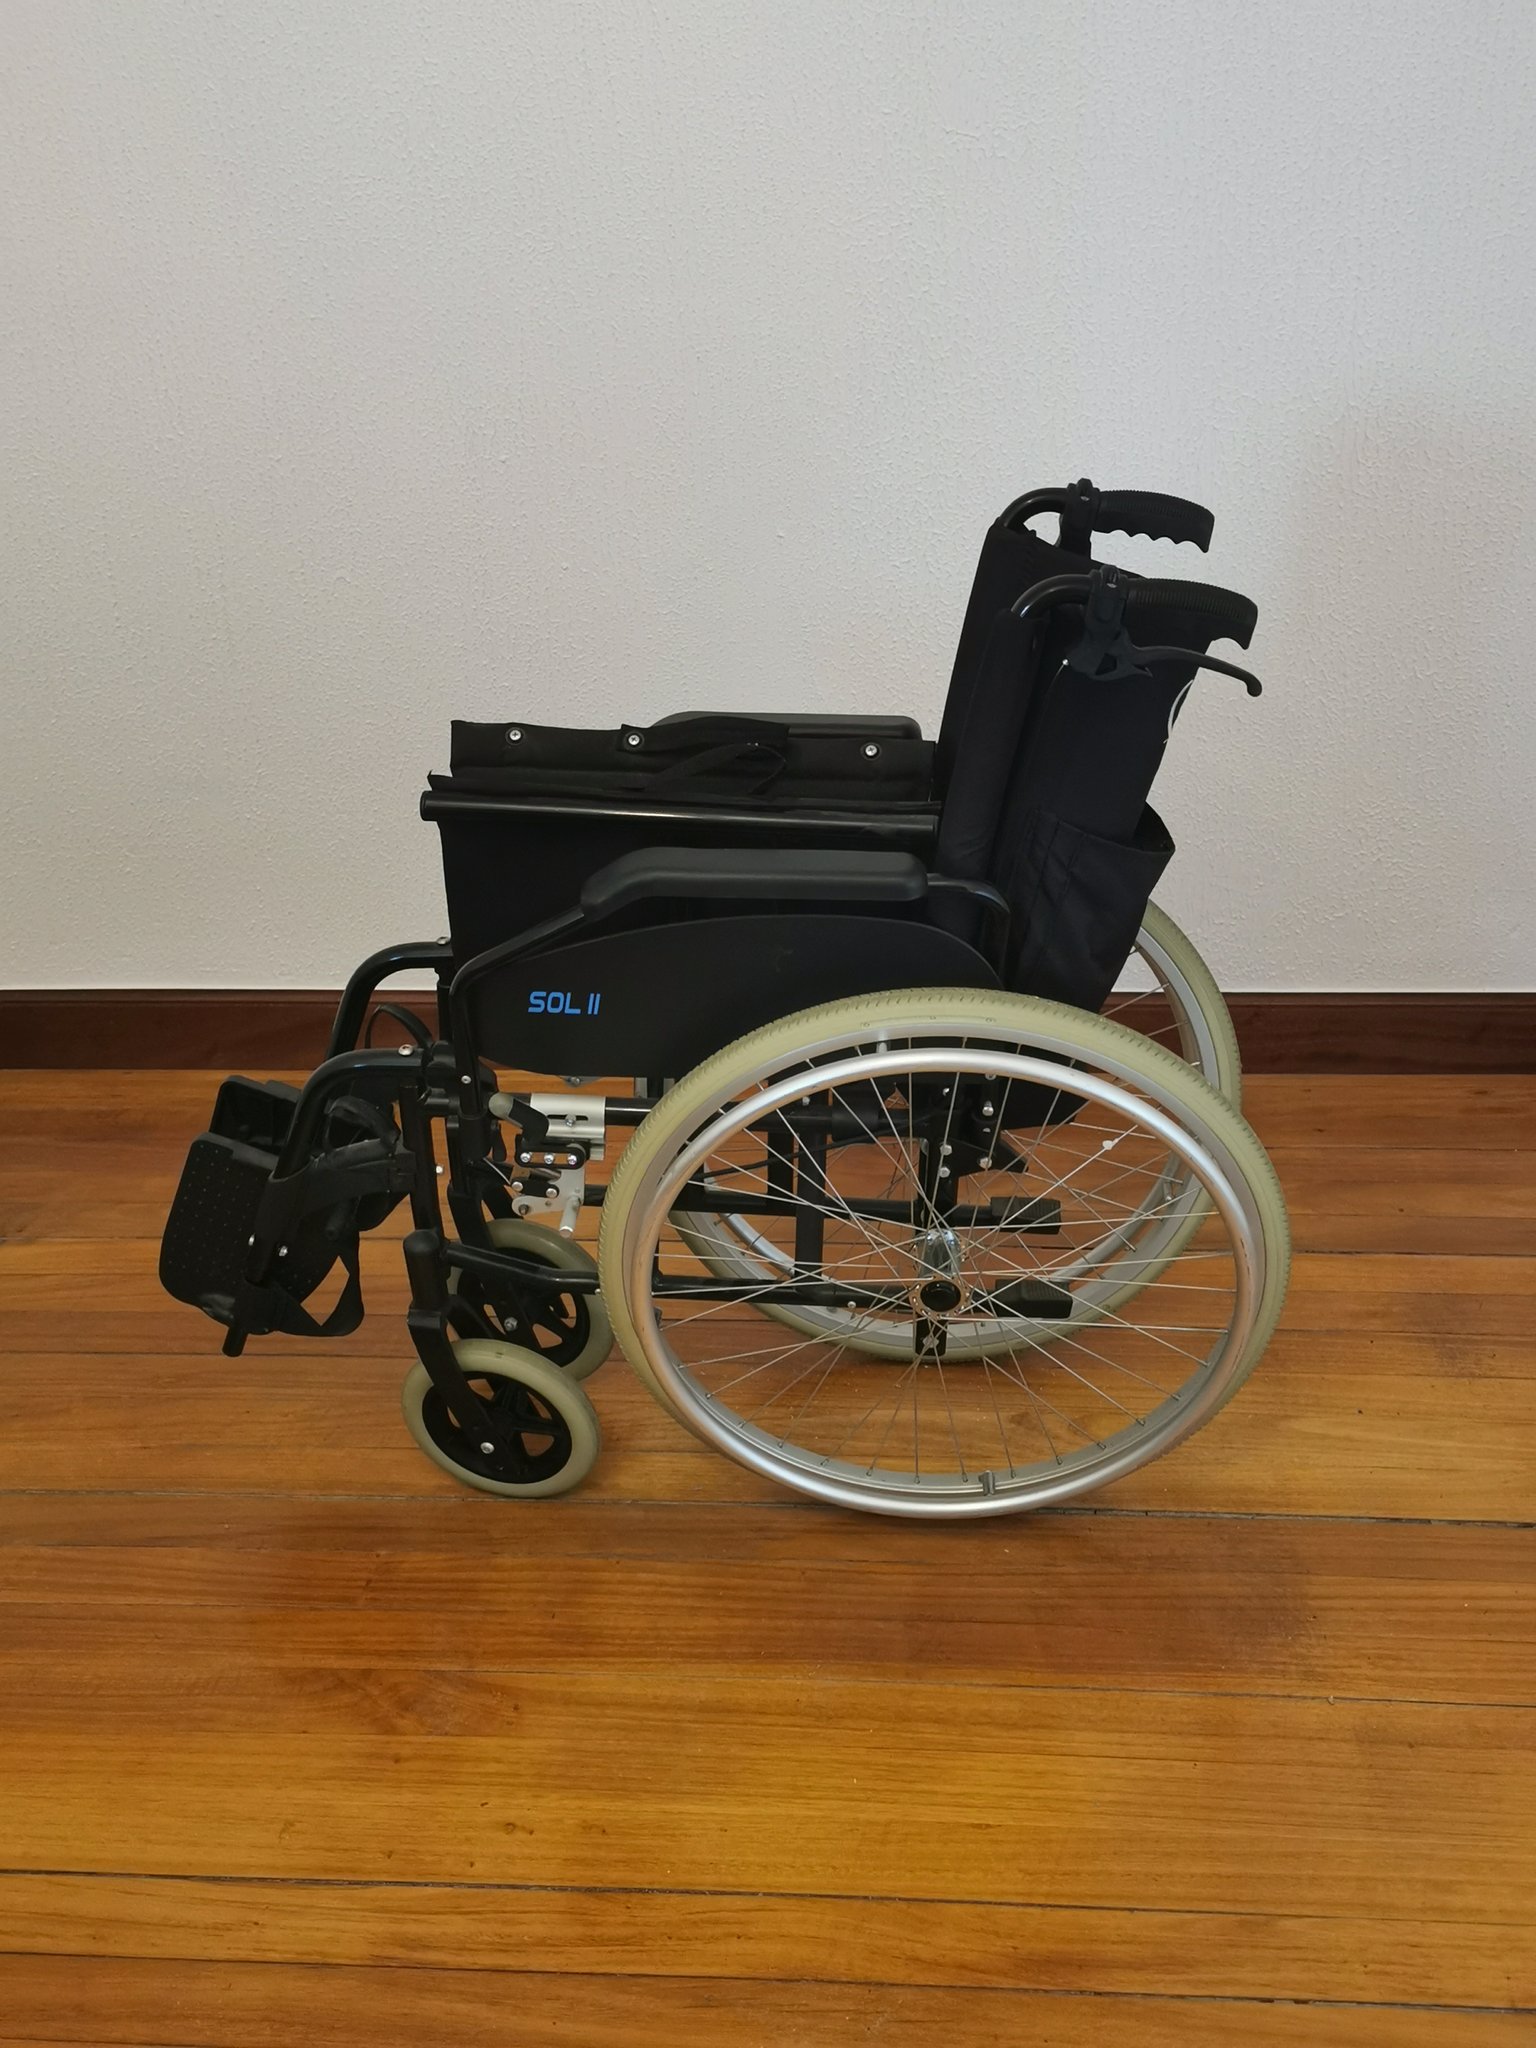 Obsesión mueble Avanzado Karlos ✊🔻 on Twitter: "Regalo silla de ruedas a persona necesitada y con  pocos recursos. Para contactar dejar un MD. https://t.co/w2Sbe92dUc" /  Twitter